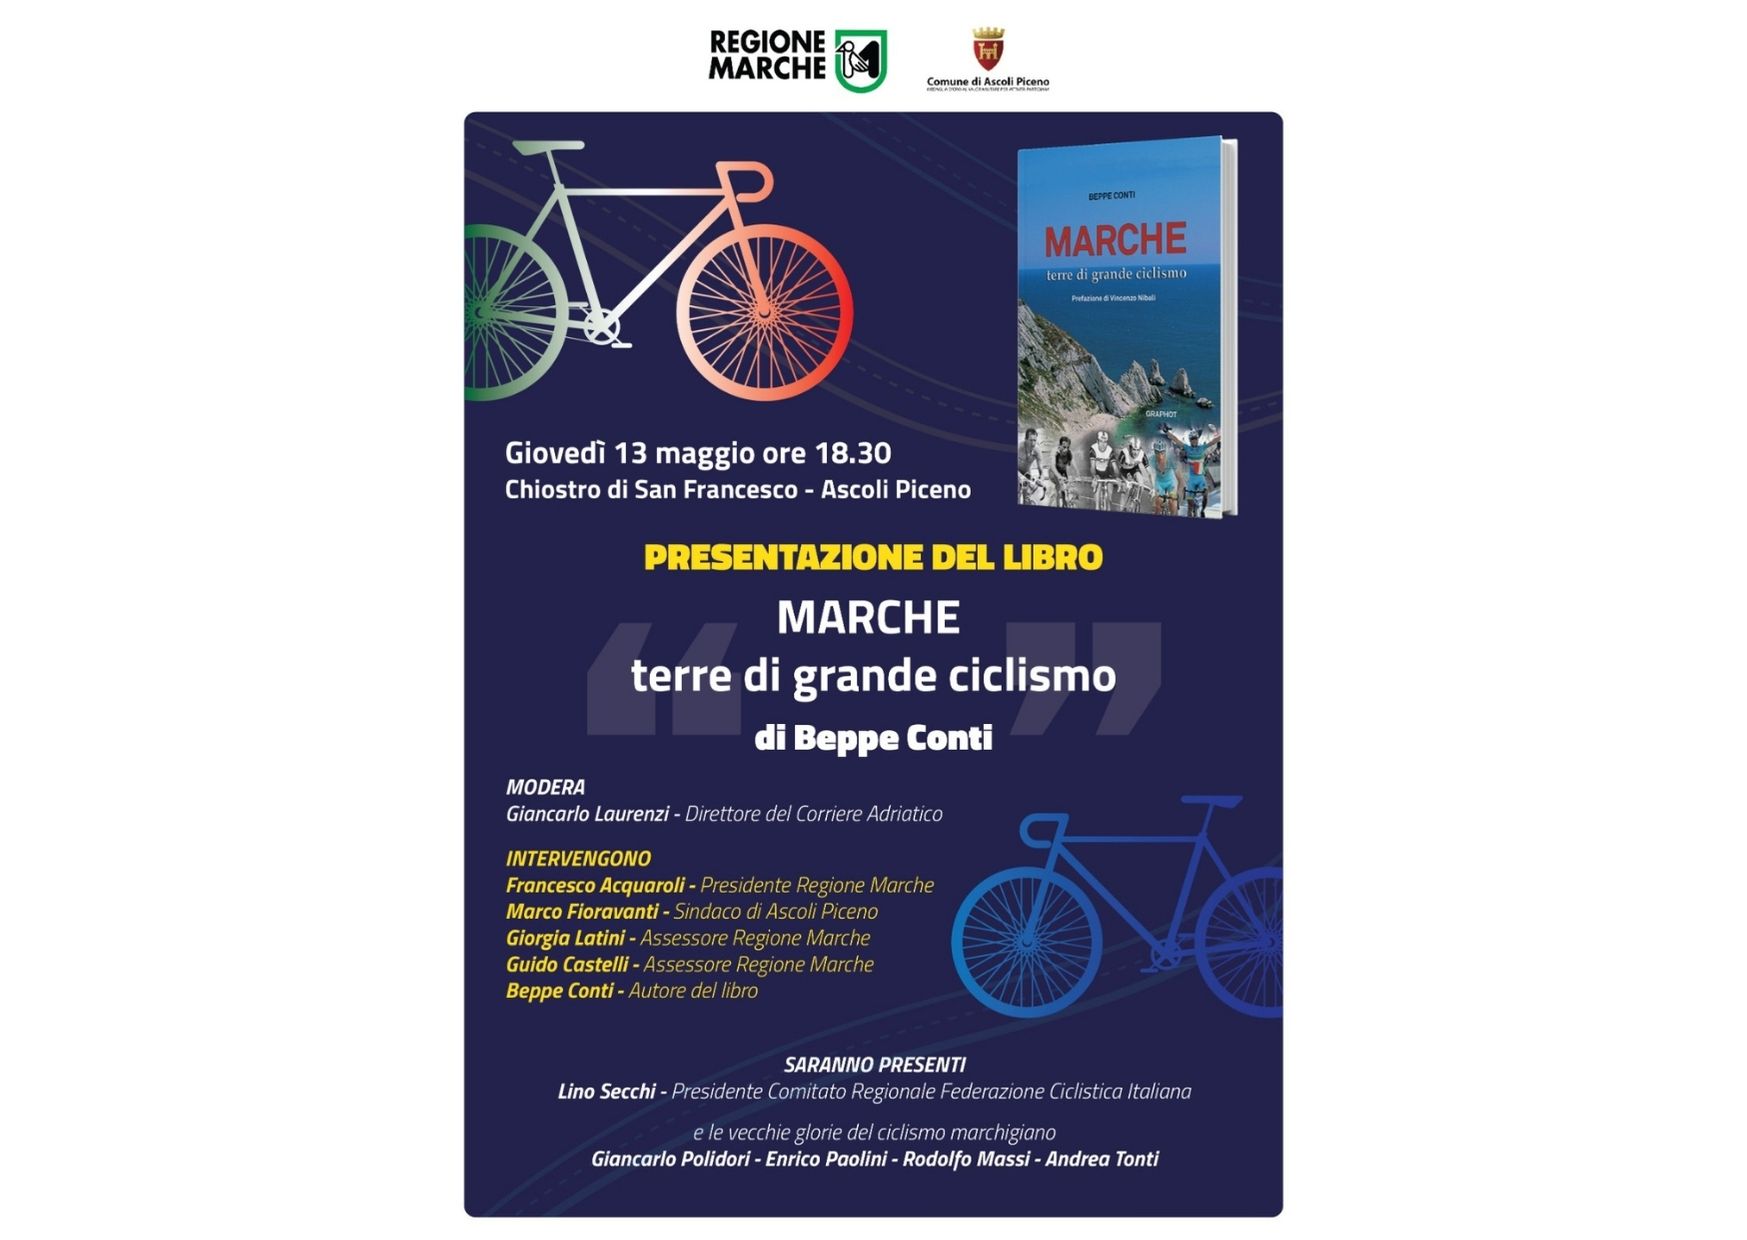 Domani il Giro d’Italia attraversa le Marche, appuntamento ad Ascoli Piceno per l’arrivo di tappa